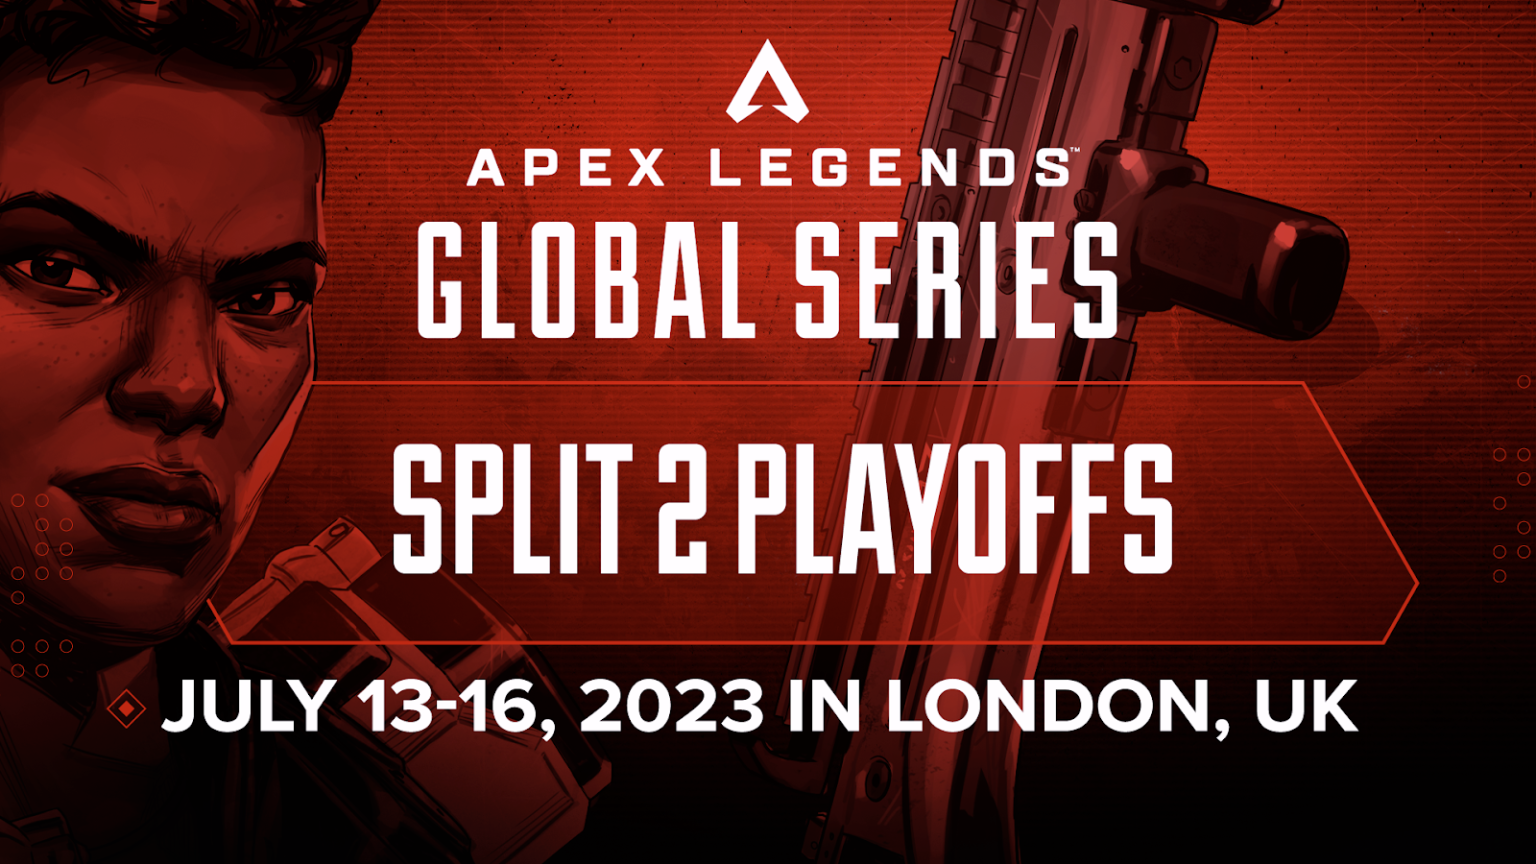 Apex Legends Global Series kembali ke London